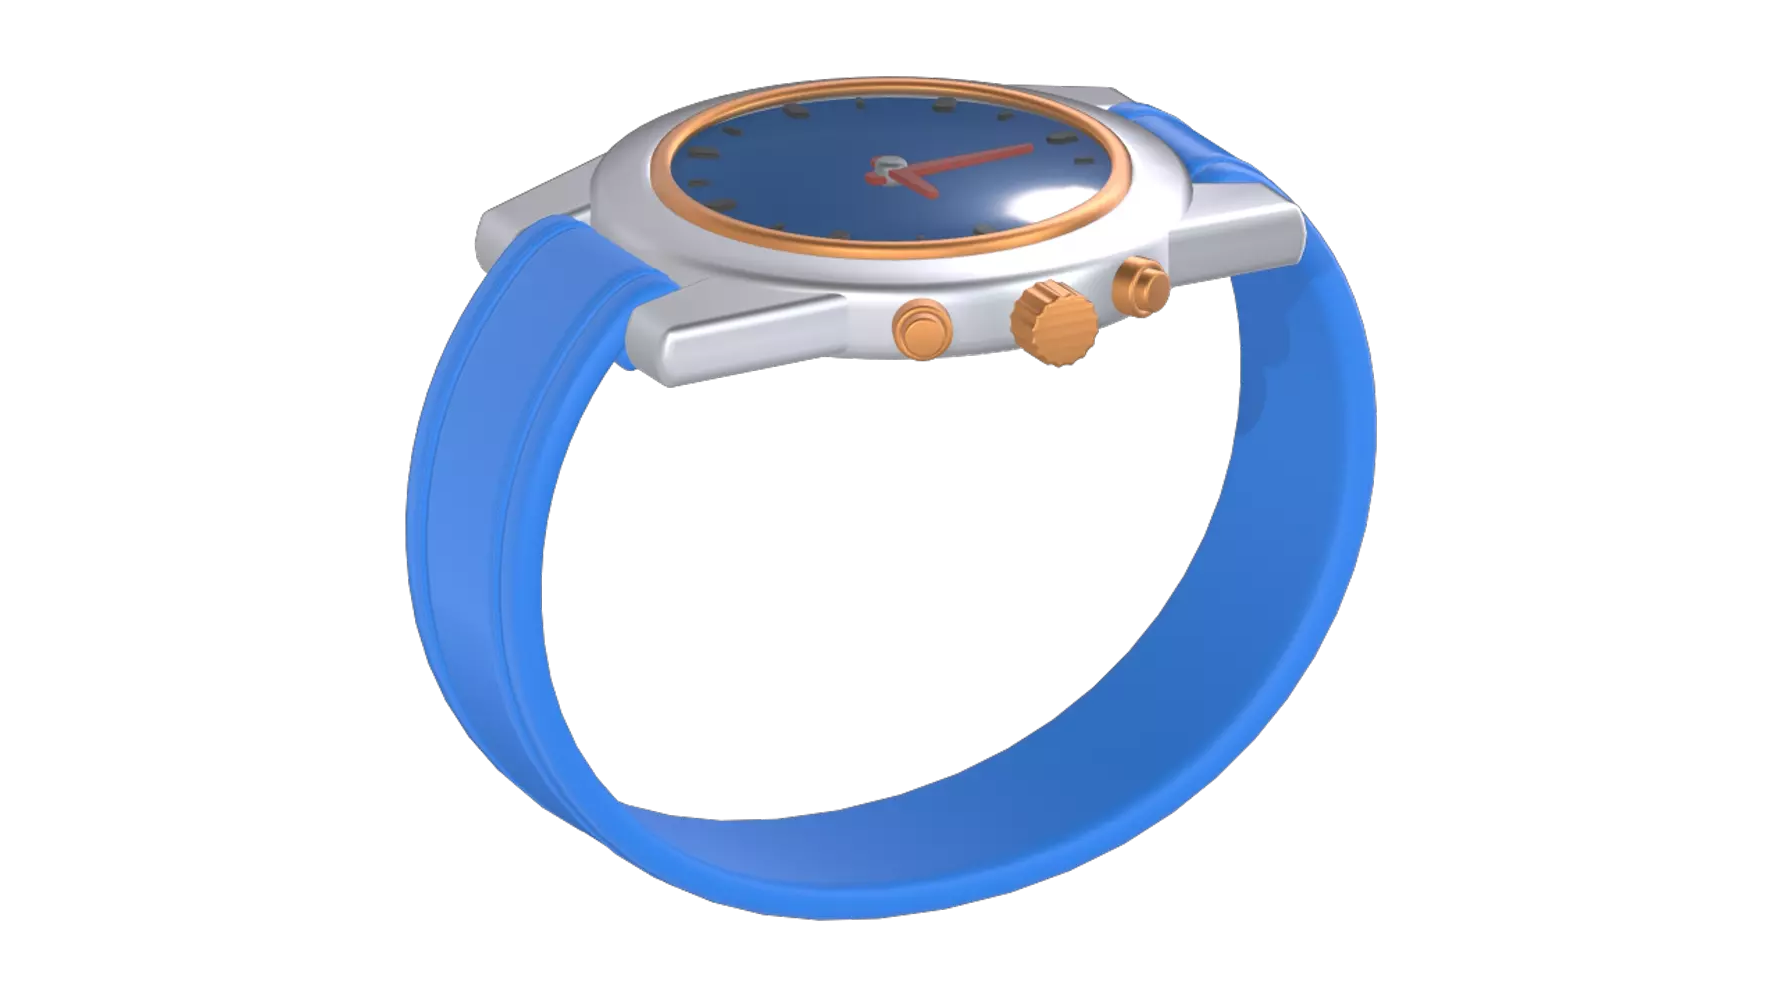 Wrist Watch 3d model--12a905ff-7259-44c7-8de3-e30b50cff6a5